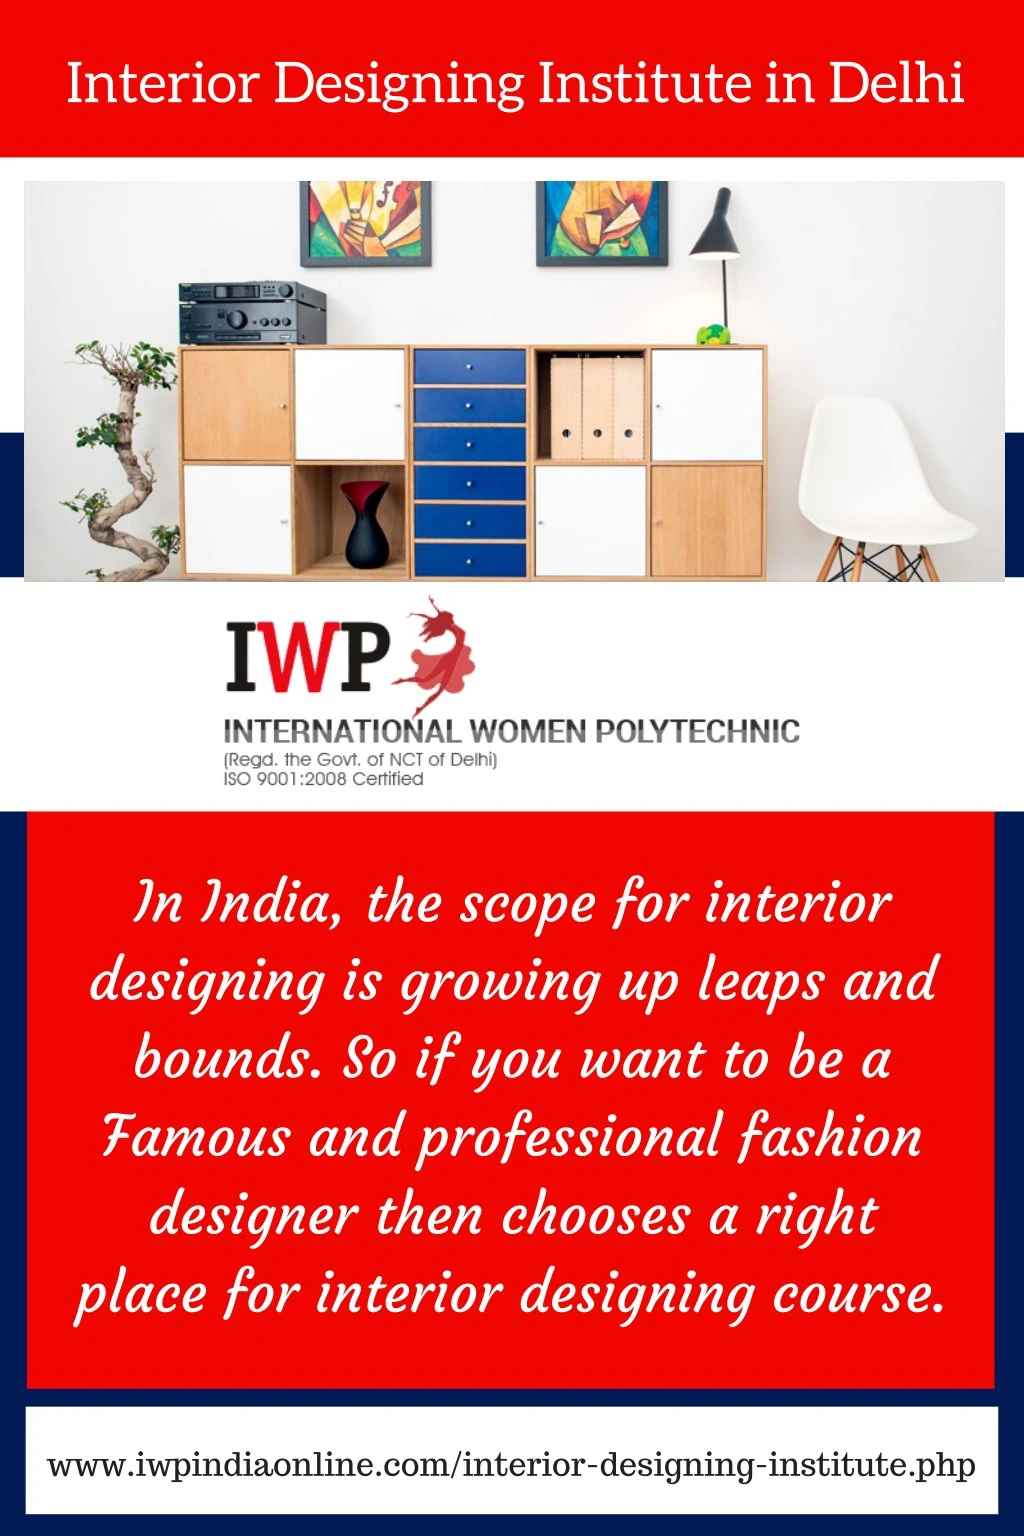 Ppt Interior Designing Institute In Delhi Powerpoint